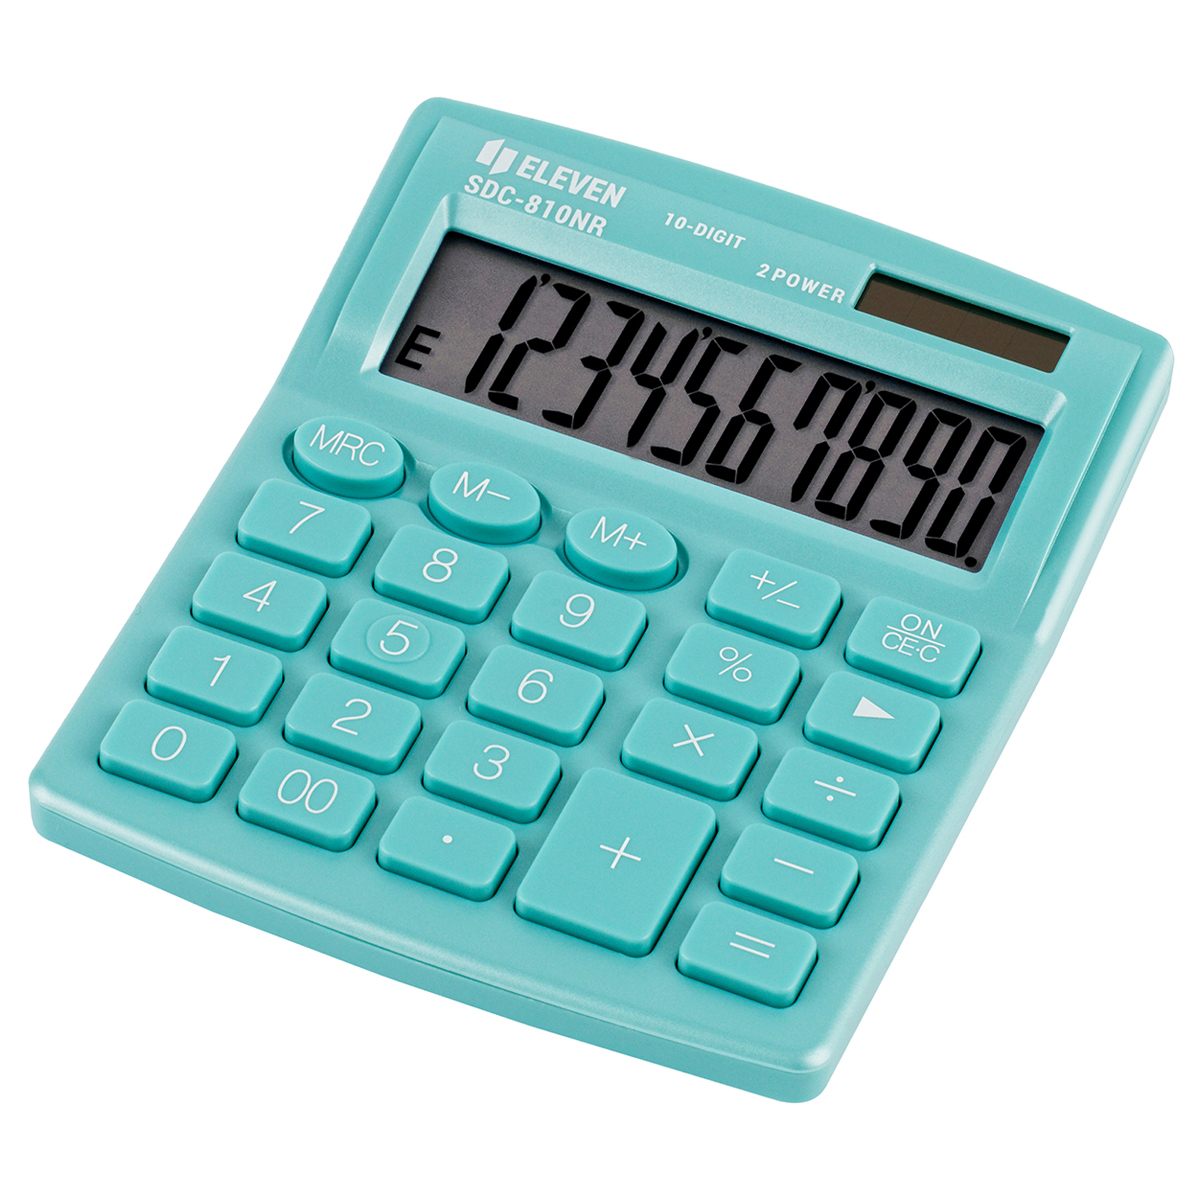 Калькулятор настольный Eleven SDC-810NR-GN, 10 разрядов, двойное питание, 102*124*25мм, бирюзовый